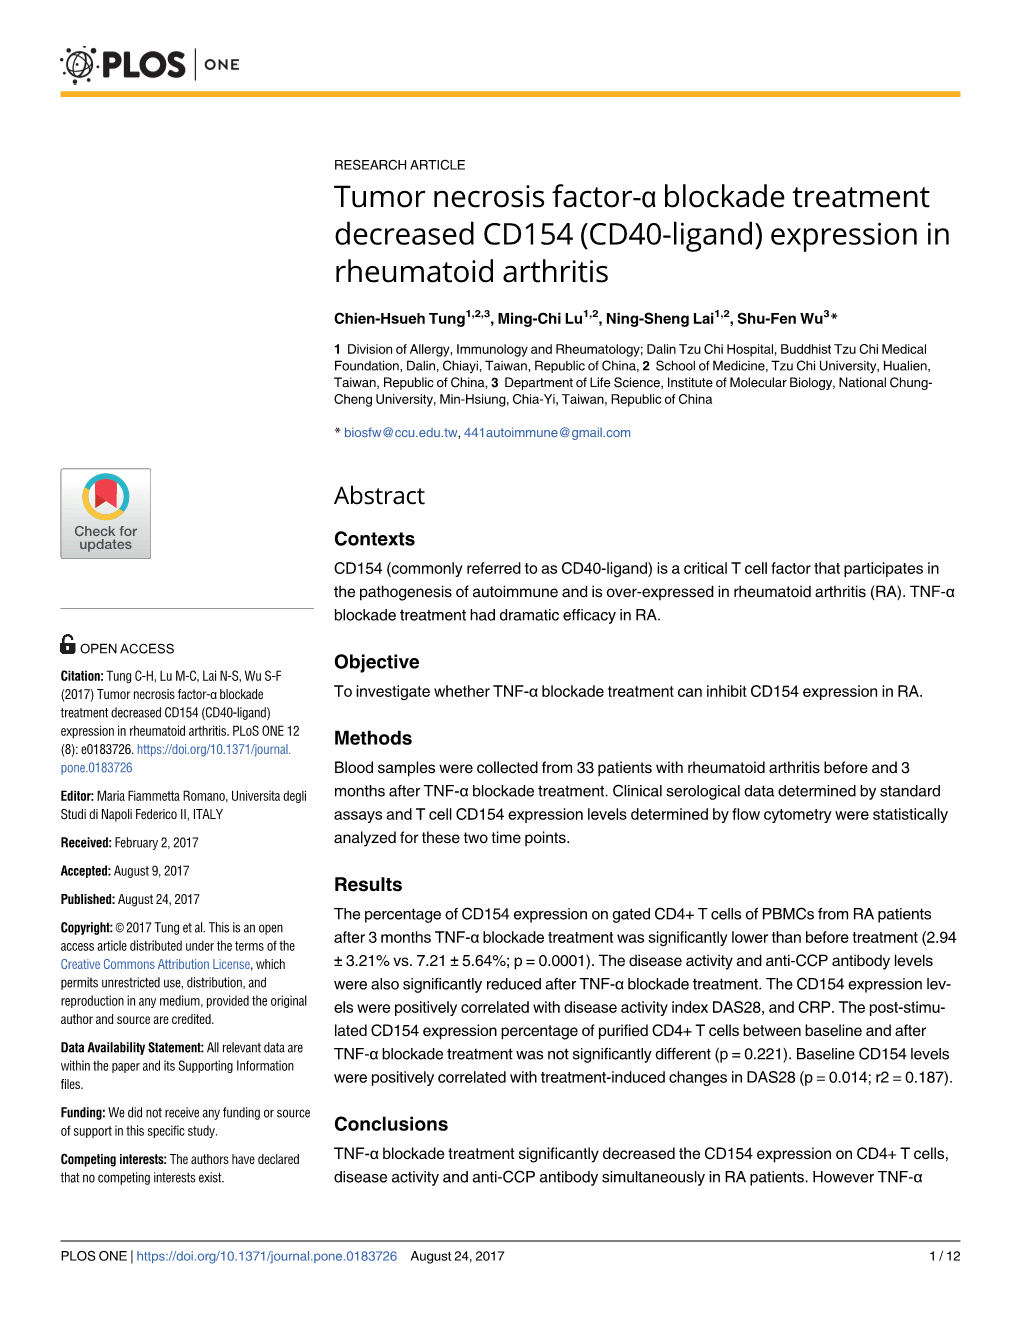 Tumor Necrosis Factor-Α Blockade Treatment Decreased CD154 (CD40-Ligand) Expression in Rheumatoid Arthritis